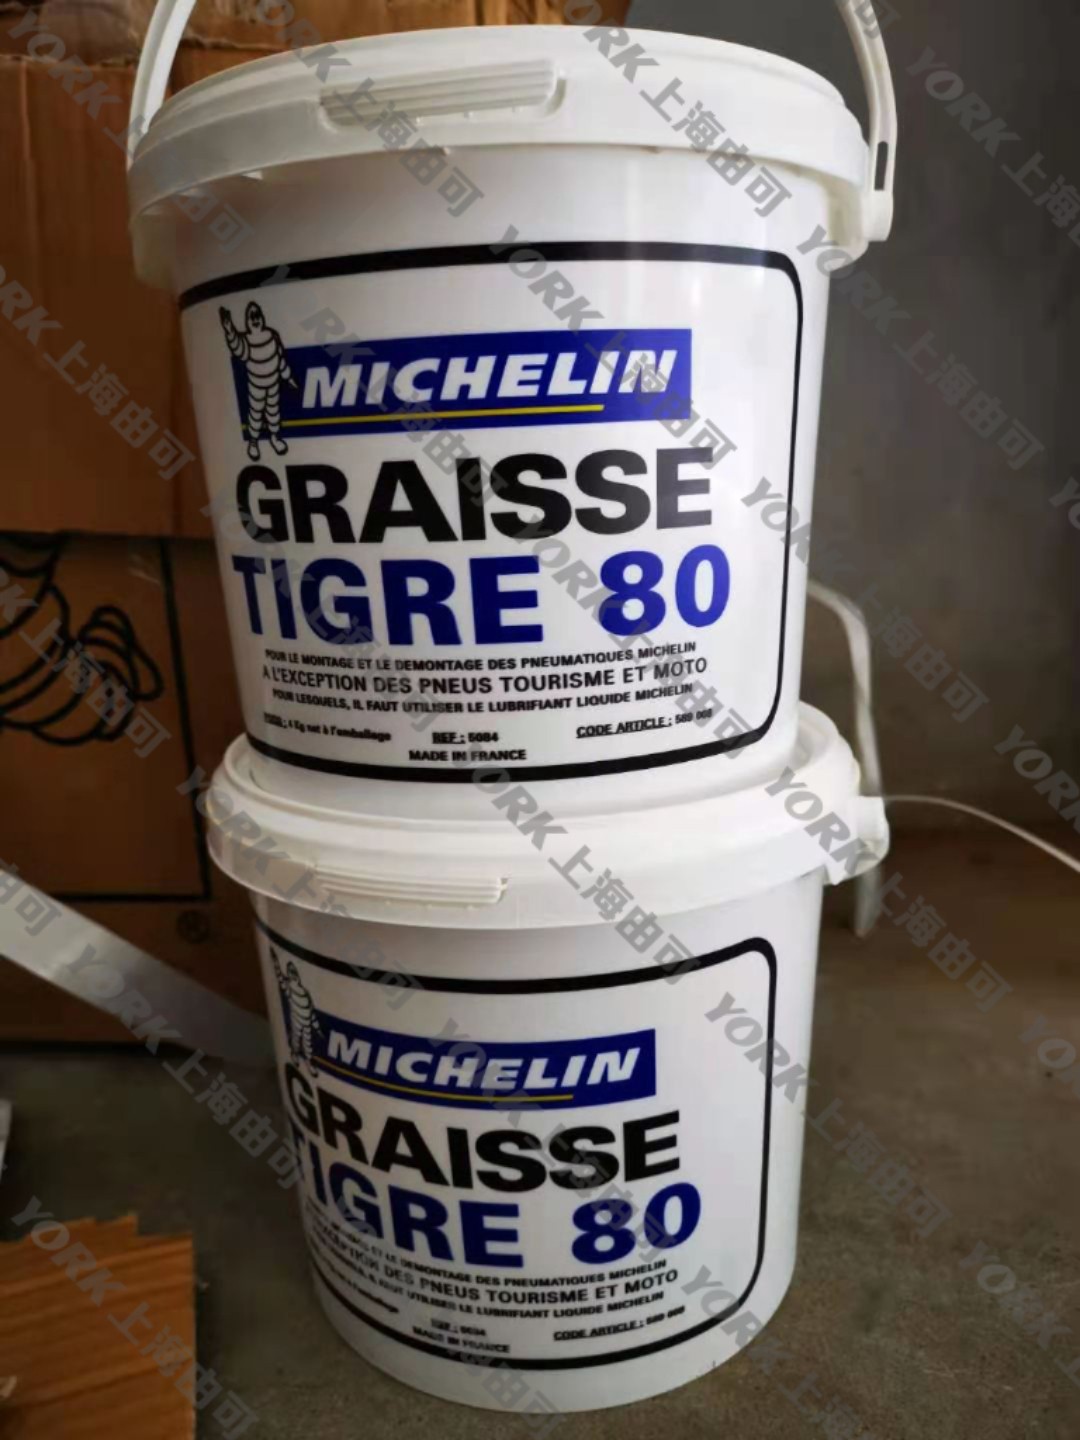 Michelin Graisse Tigre 80